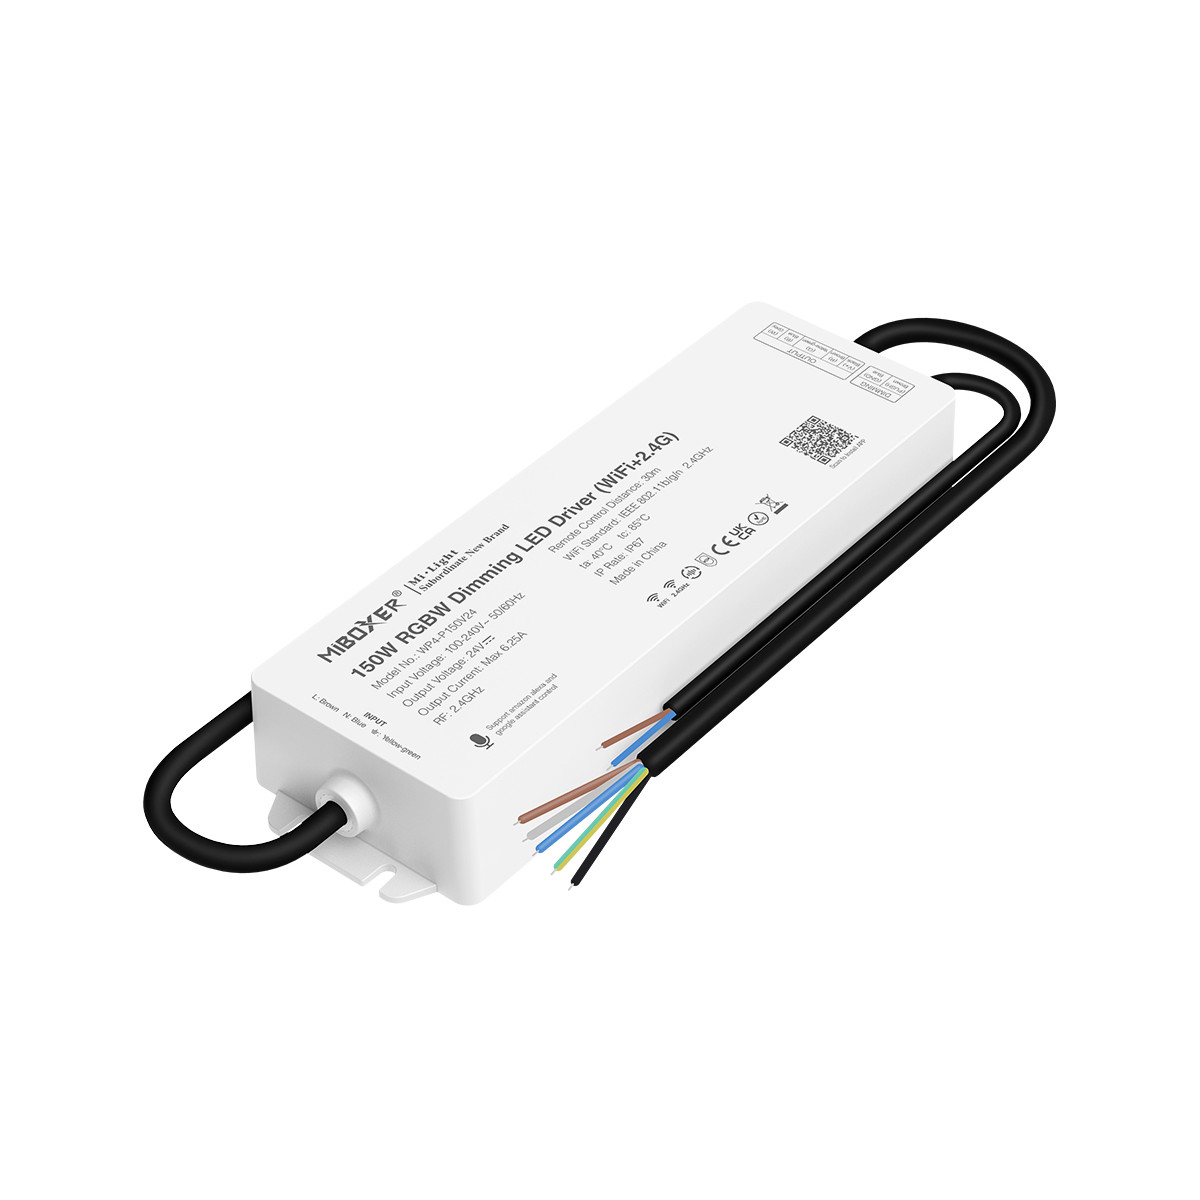 Controlador de Fita LED RGB / RGBW com fonte de alimentação 150W - 24V DC - WIFI+2.4G - IP67